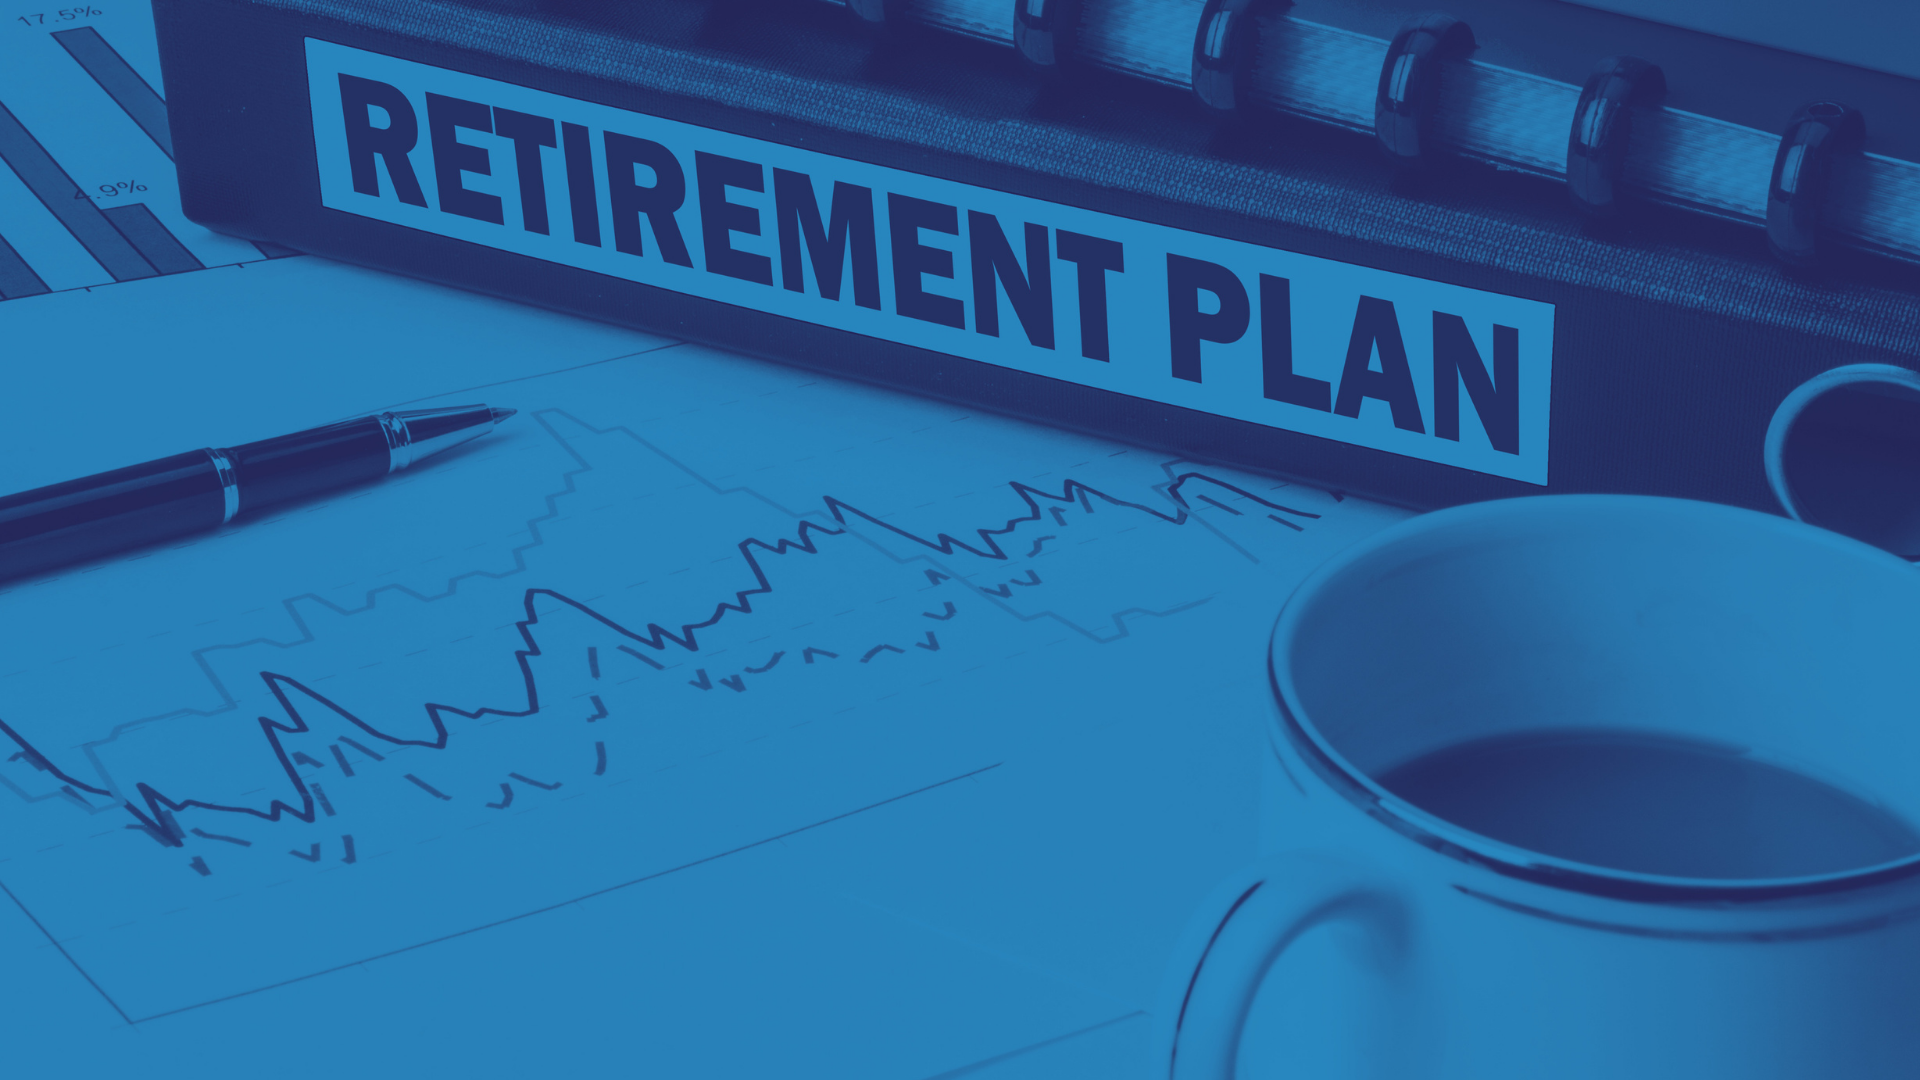 Retirement Plans concept - PS background image